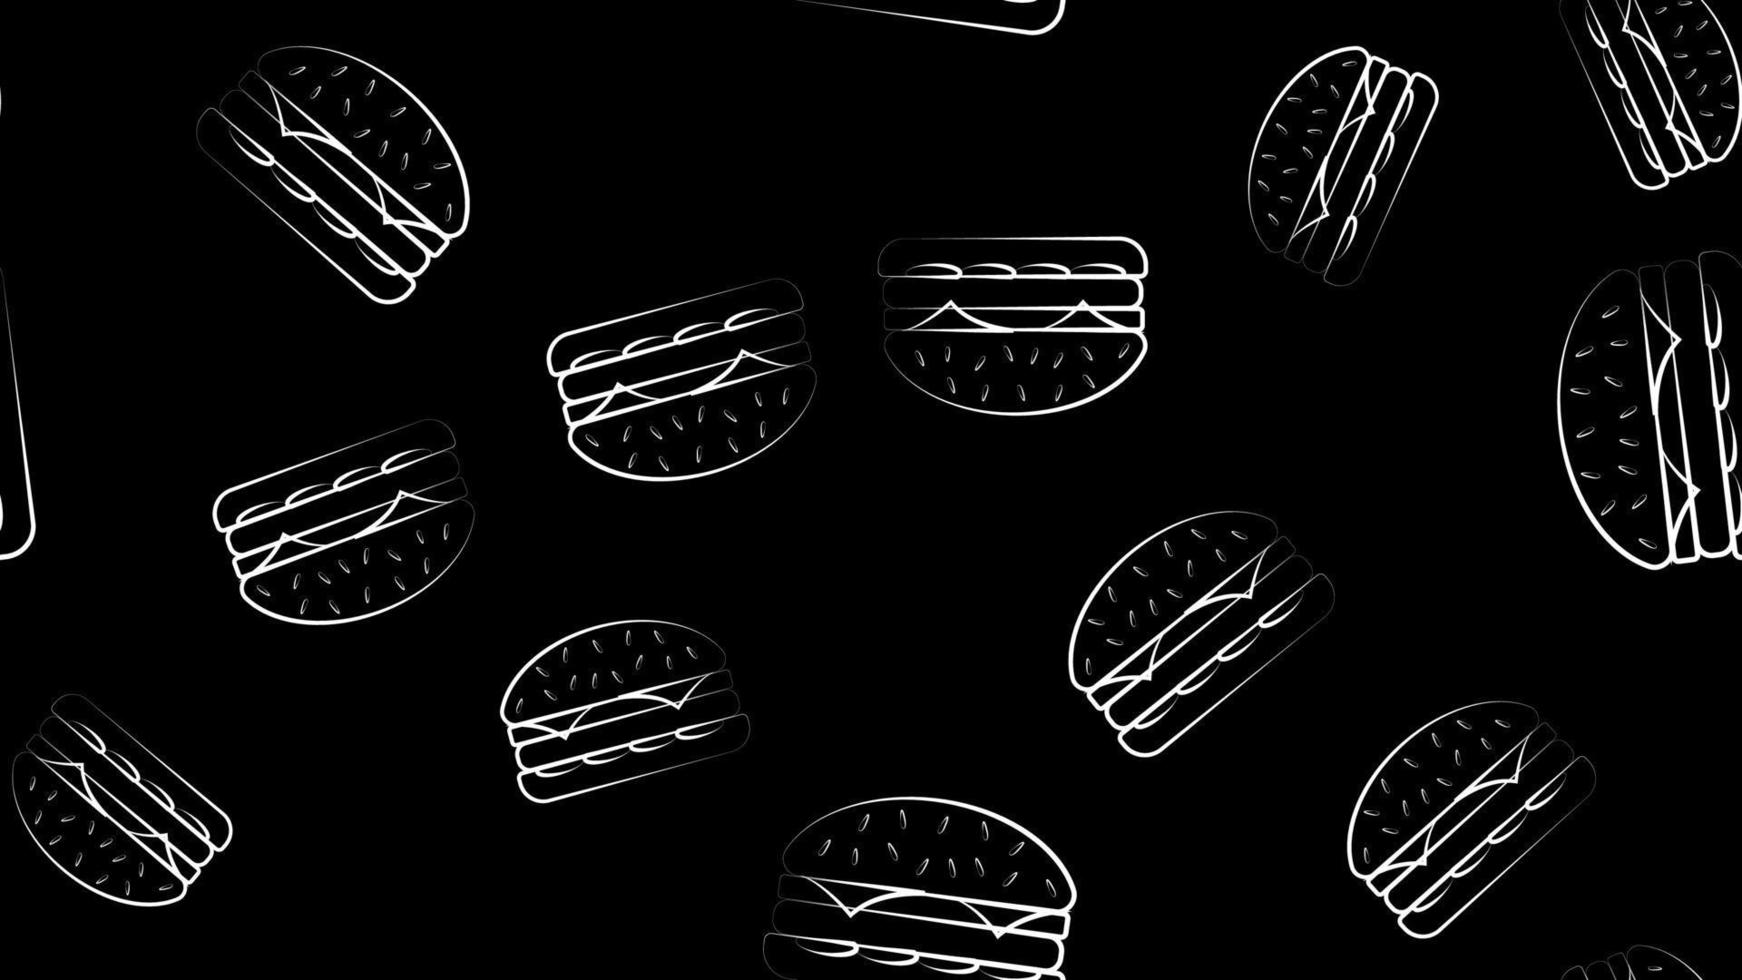 modèle sans couture de vecteur de hamburgers de contour noir. arrière-plan pour bannière, emballage, menu